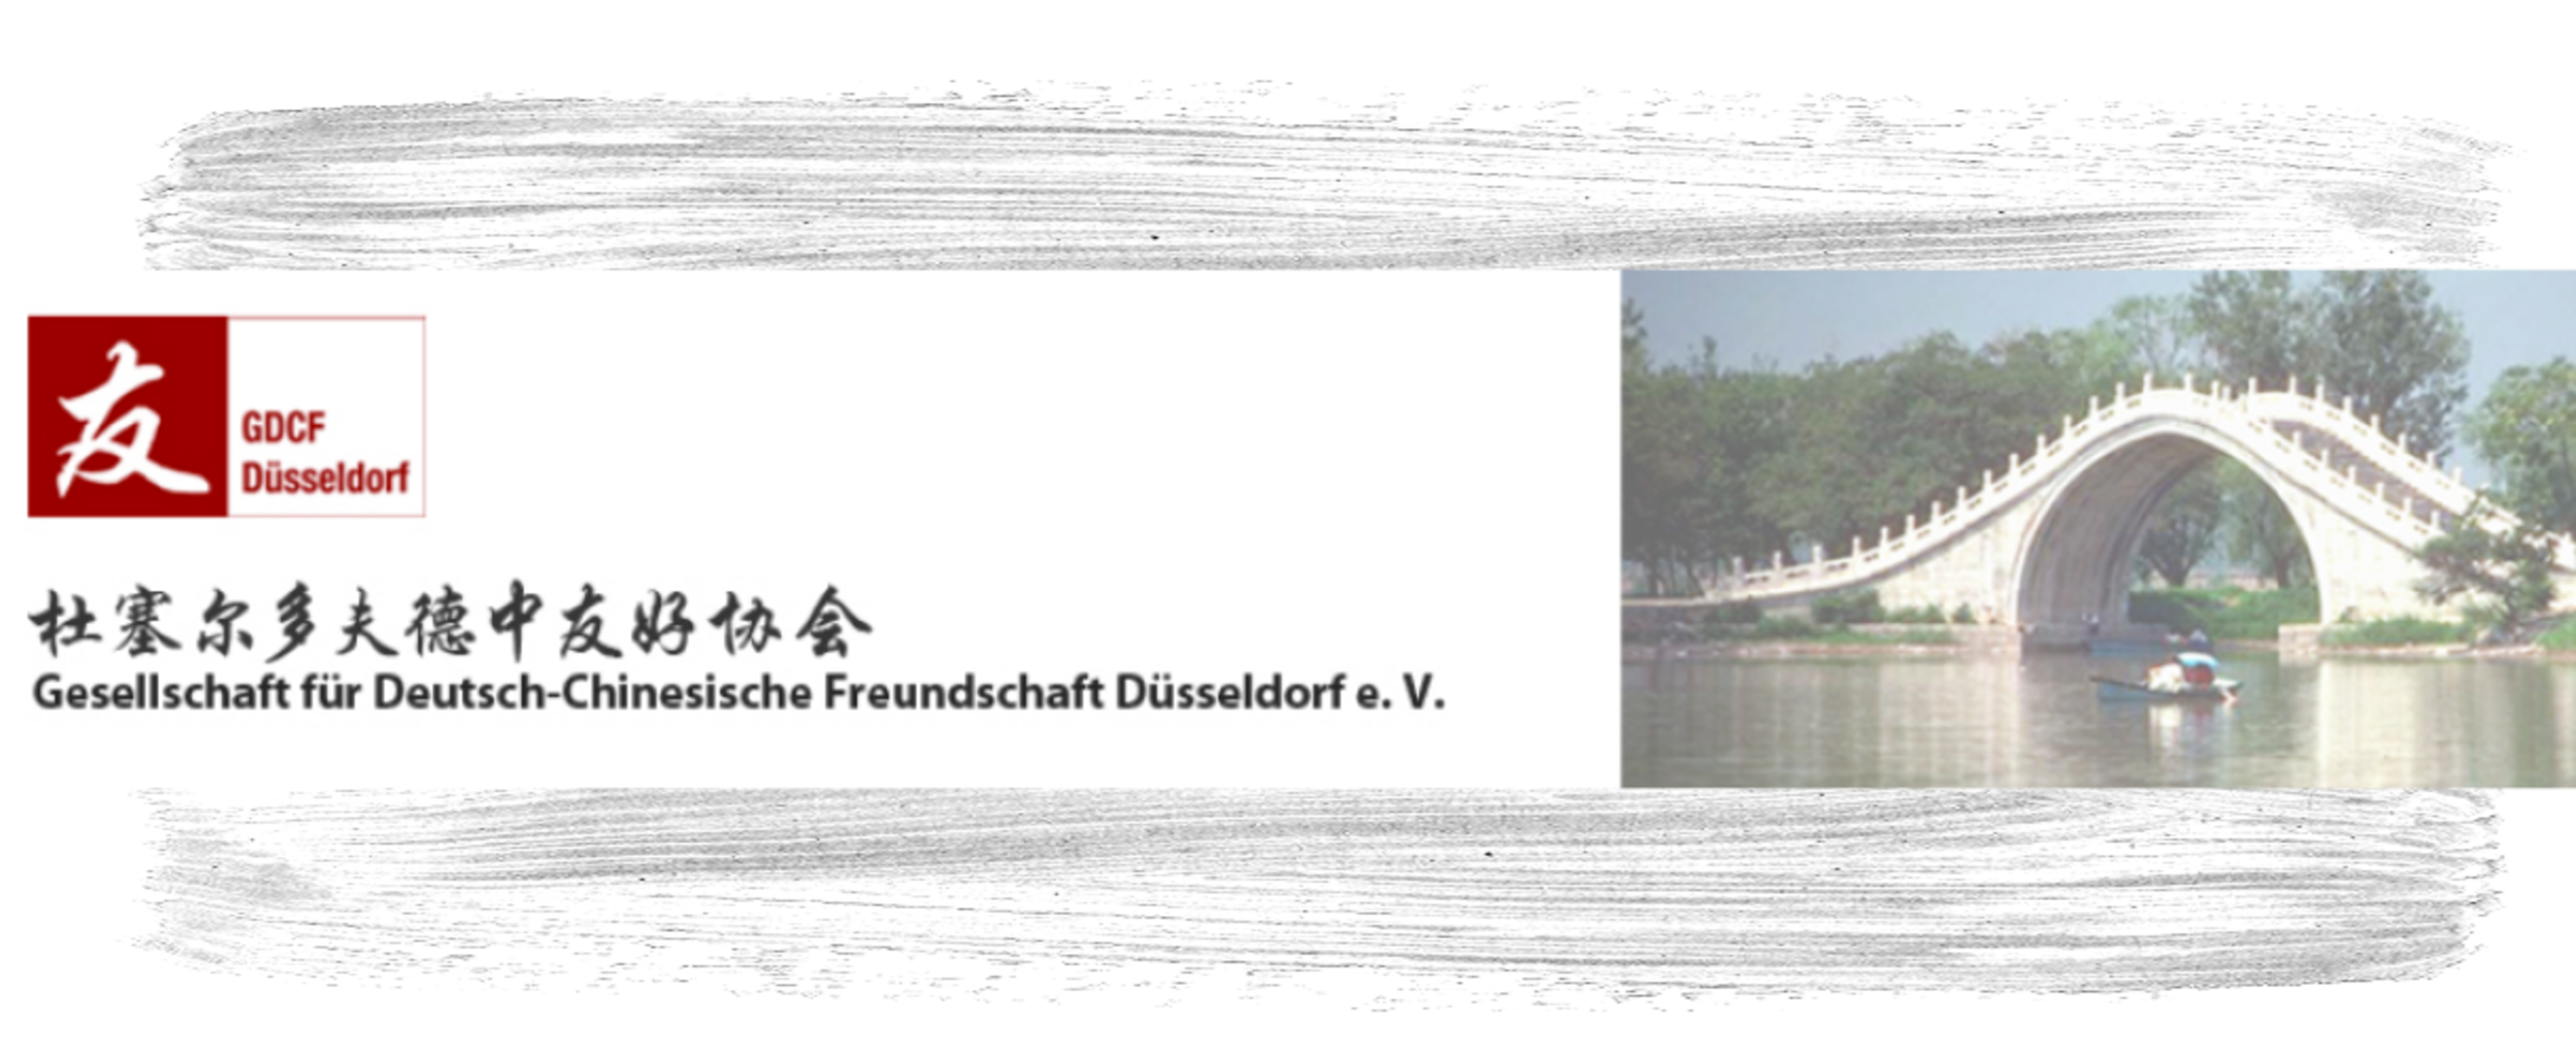 Gesellschaft für Deutsch-Chinesische Freundschaft (GDCF)